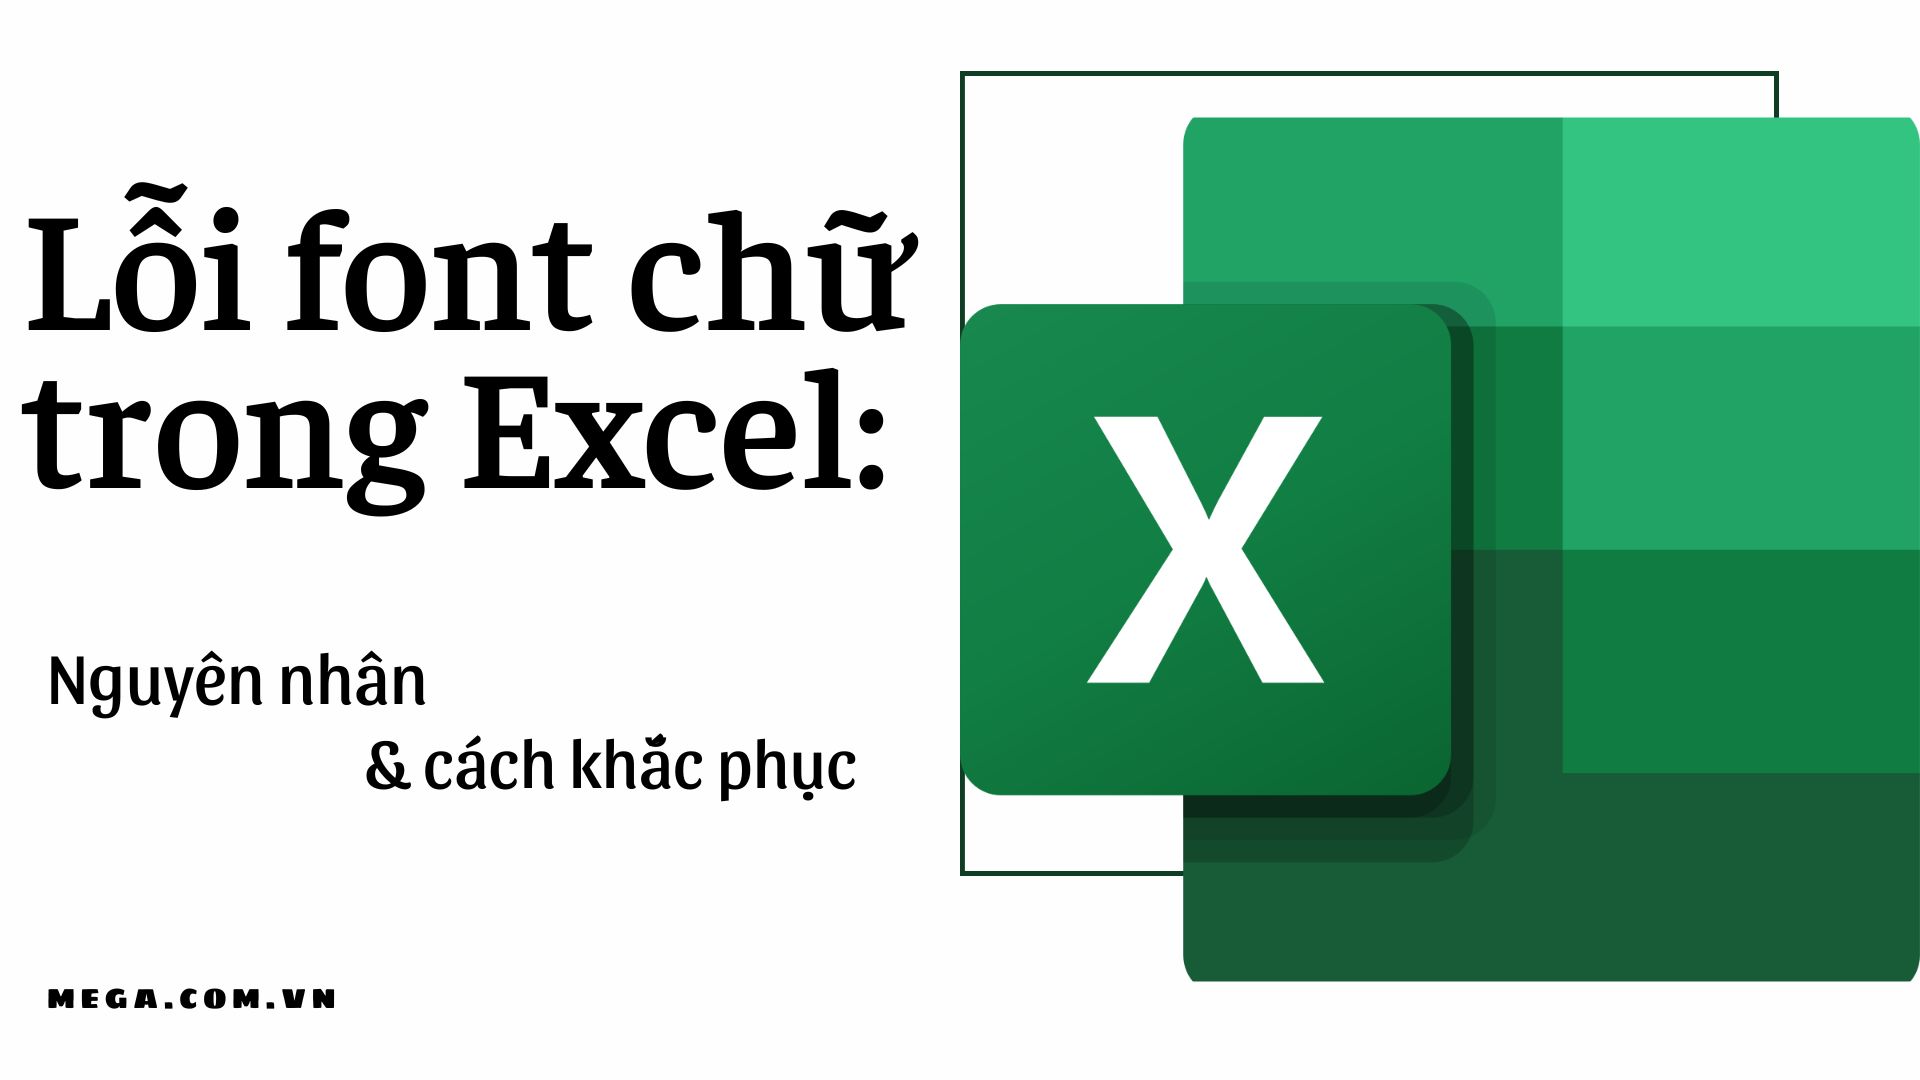 3 Bước Sữa Lỗi Font Tiếng Việt Khi Mở File CSV Trong Excel Đơn - Sửa lỗi font Tiếng Việt trong Excel 2024
Bạn đang gặp phải lỗi font Tiếng Việt khi mở file CSV trong Excel đơn? Excel 2024 sẽ giúp bạn sửa lỗi này chỉ trong 3 bước đơn giản và dễ hiểu. Với những tính năng mới của Excel 2024, sửa lỗi font Tiếng Việt trong Excel sẽ không còn là nỗi lo lắng nữa. Hãy nâng cấp cho Excel 2024 để trải nghiệm những tính năng vượt trội và sửa lỗi font Tiếng Việt trong Excel hiệu quả hơn.